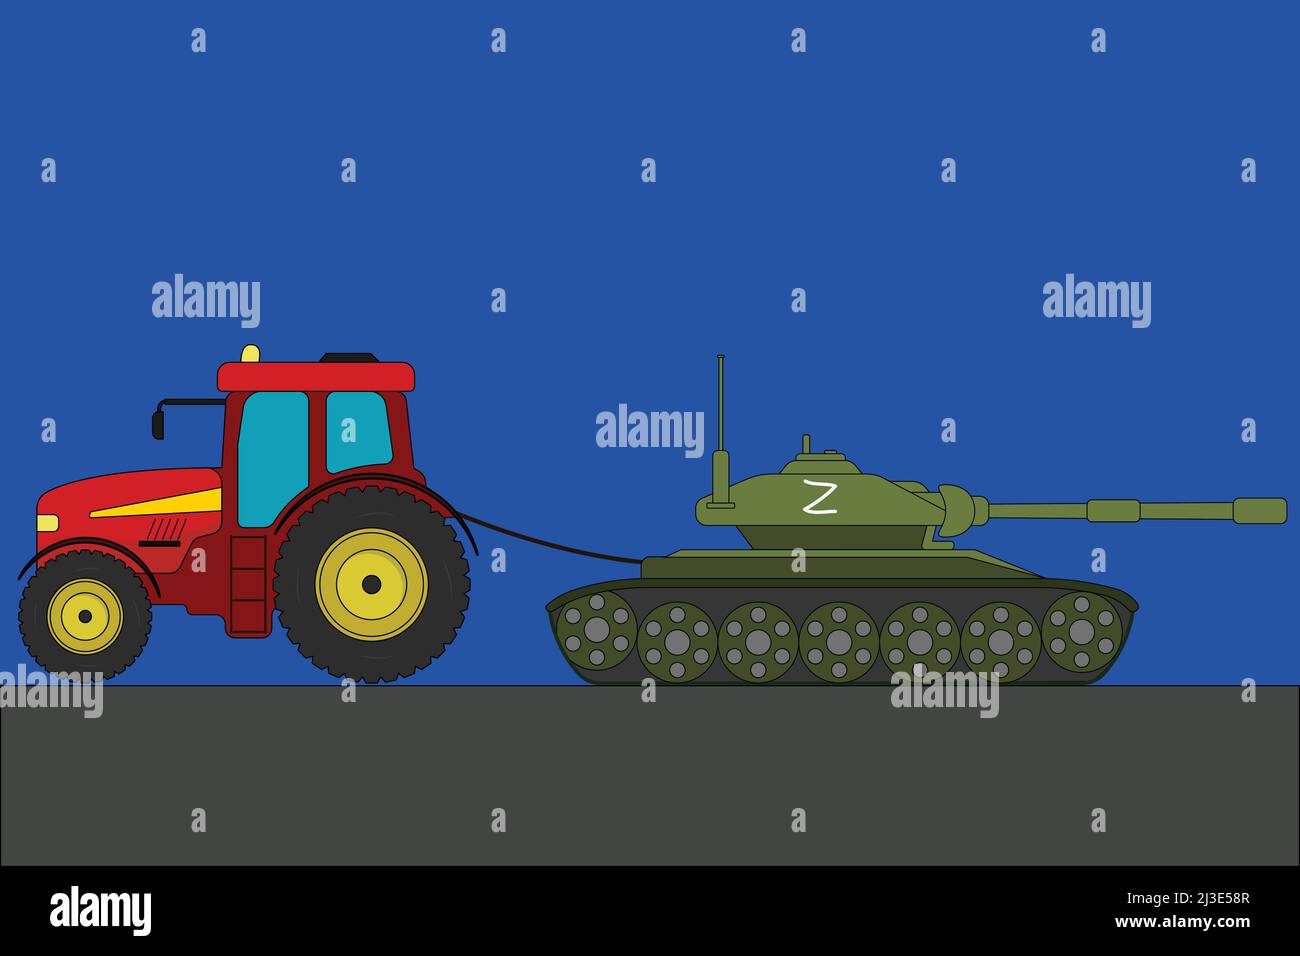 Ukrainischer Traktor schlepper einen russischen Panzer mit einer Z-Symbol-Vektor-Illustration Stock Vektor